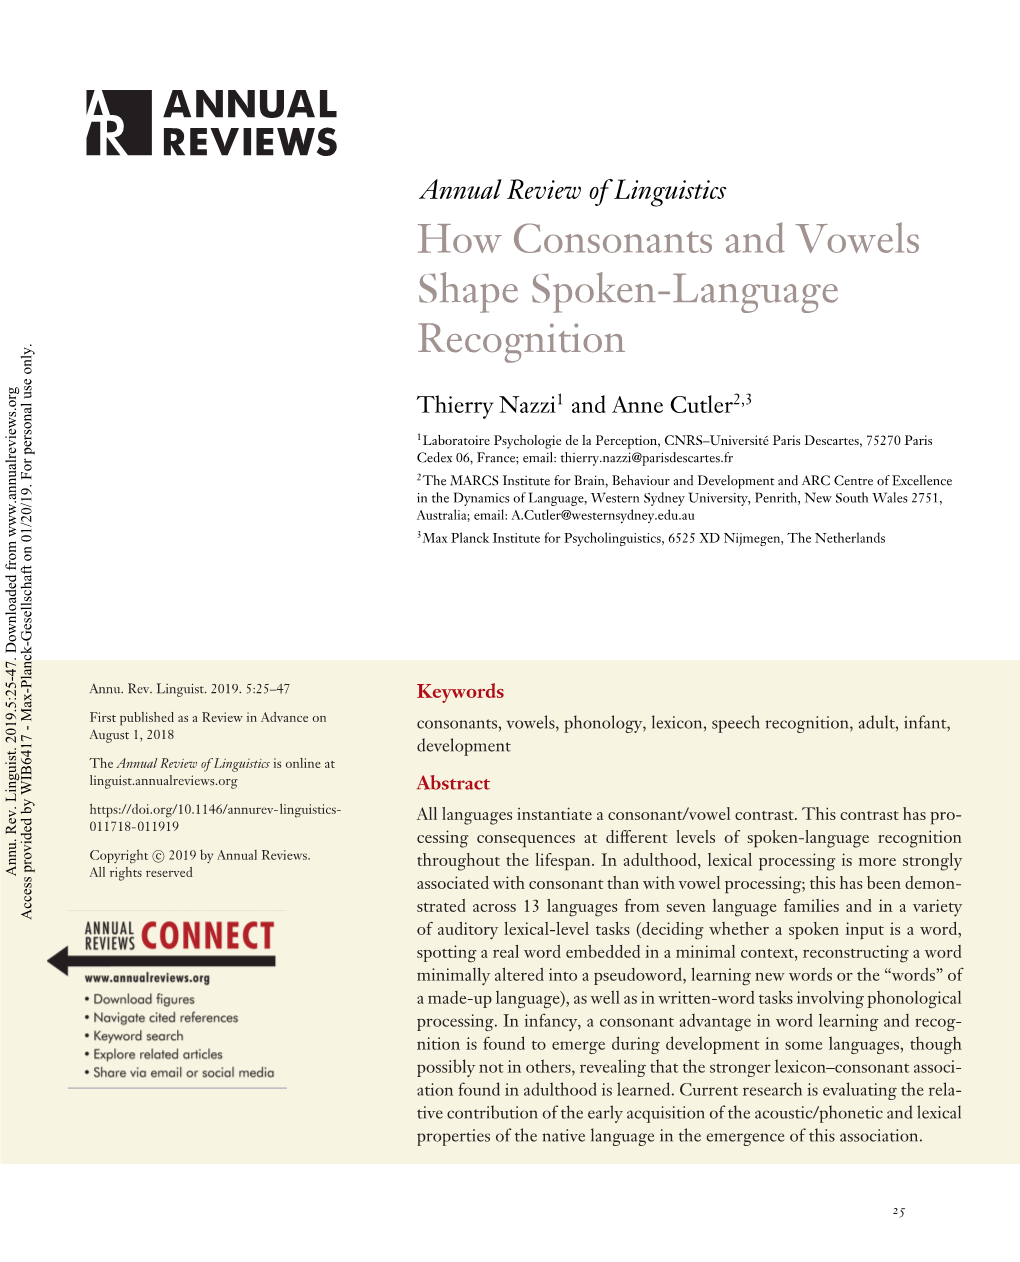 How Consonants and Vowels Shape Spoken-Language Recognition